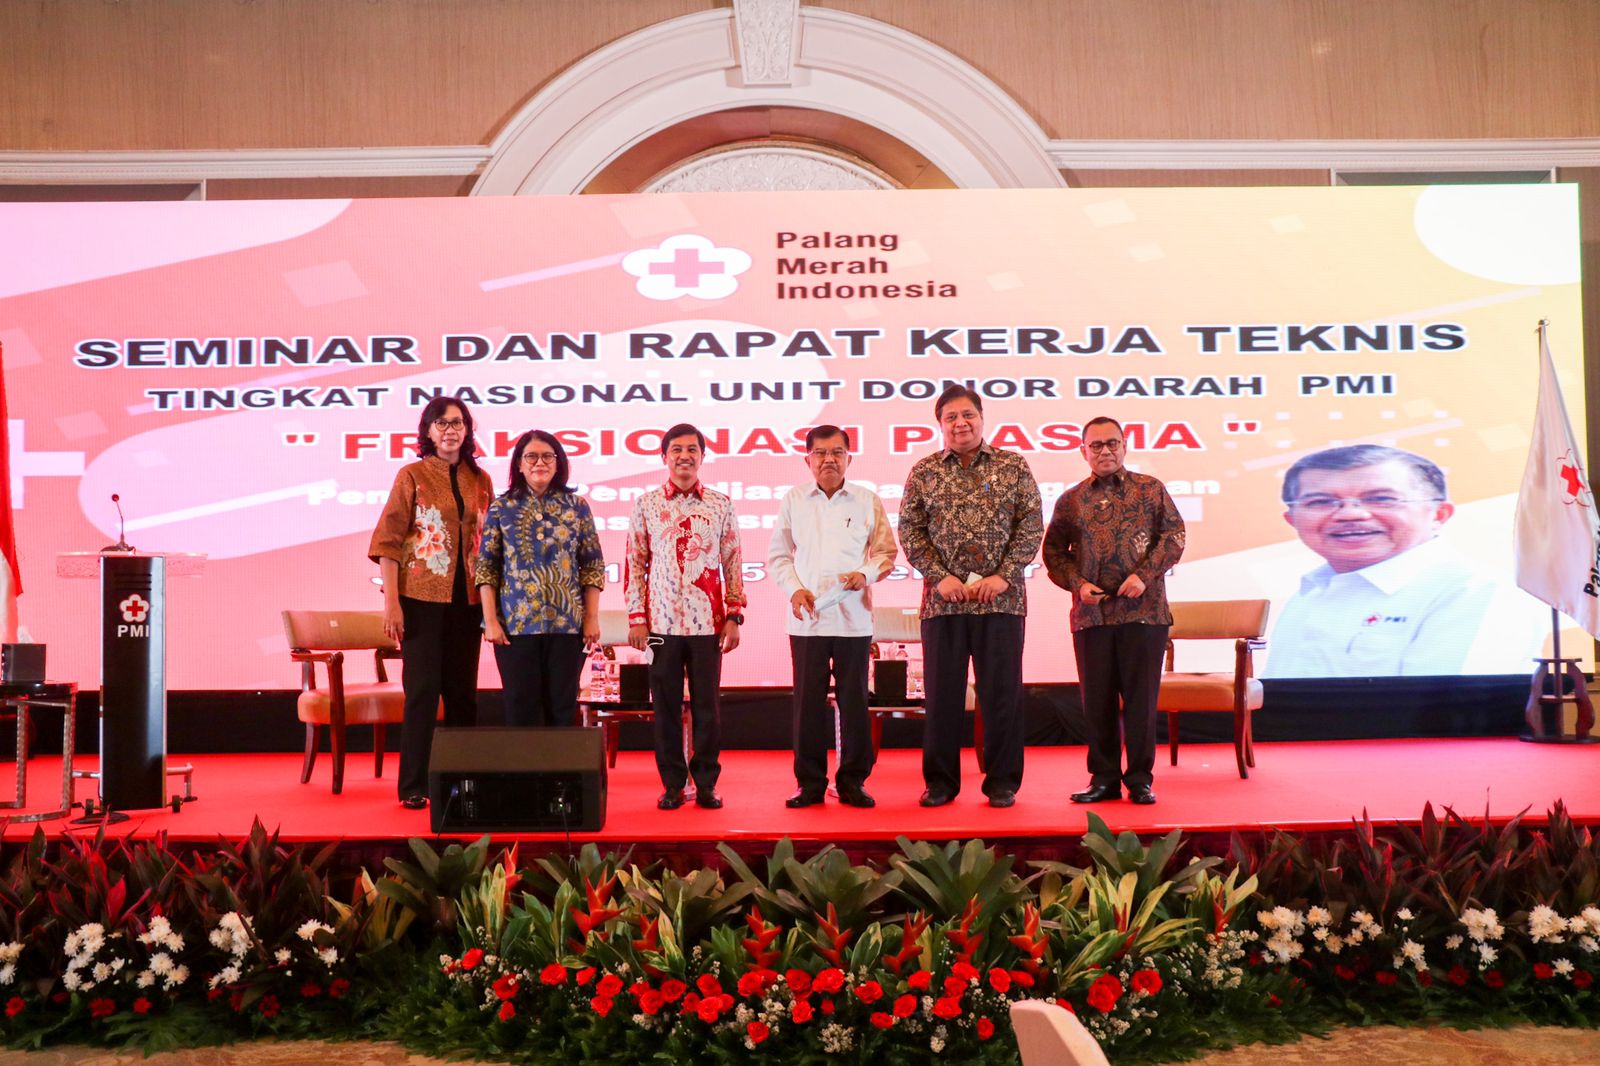 	Seminar dan Rapat Kerja Teknis Tingkat Nasional Unit Donor Darah Palang Merah Indonesia (UDD PMI) dengan tema “Fraksionasi Plasma” di Jakarta, Selasa 14 Desember 2021.